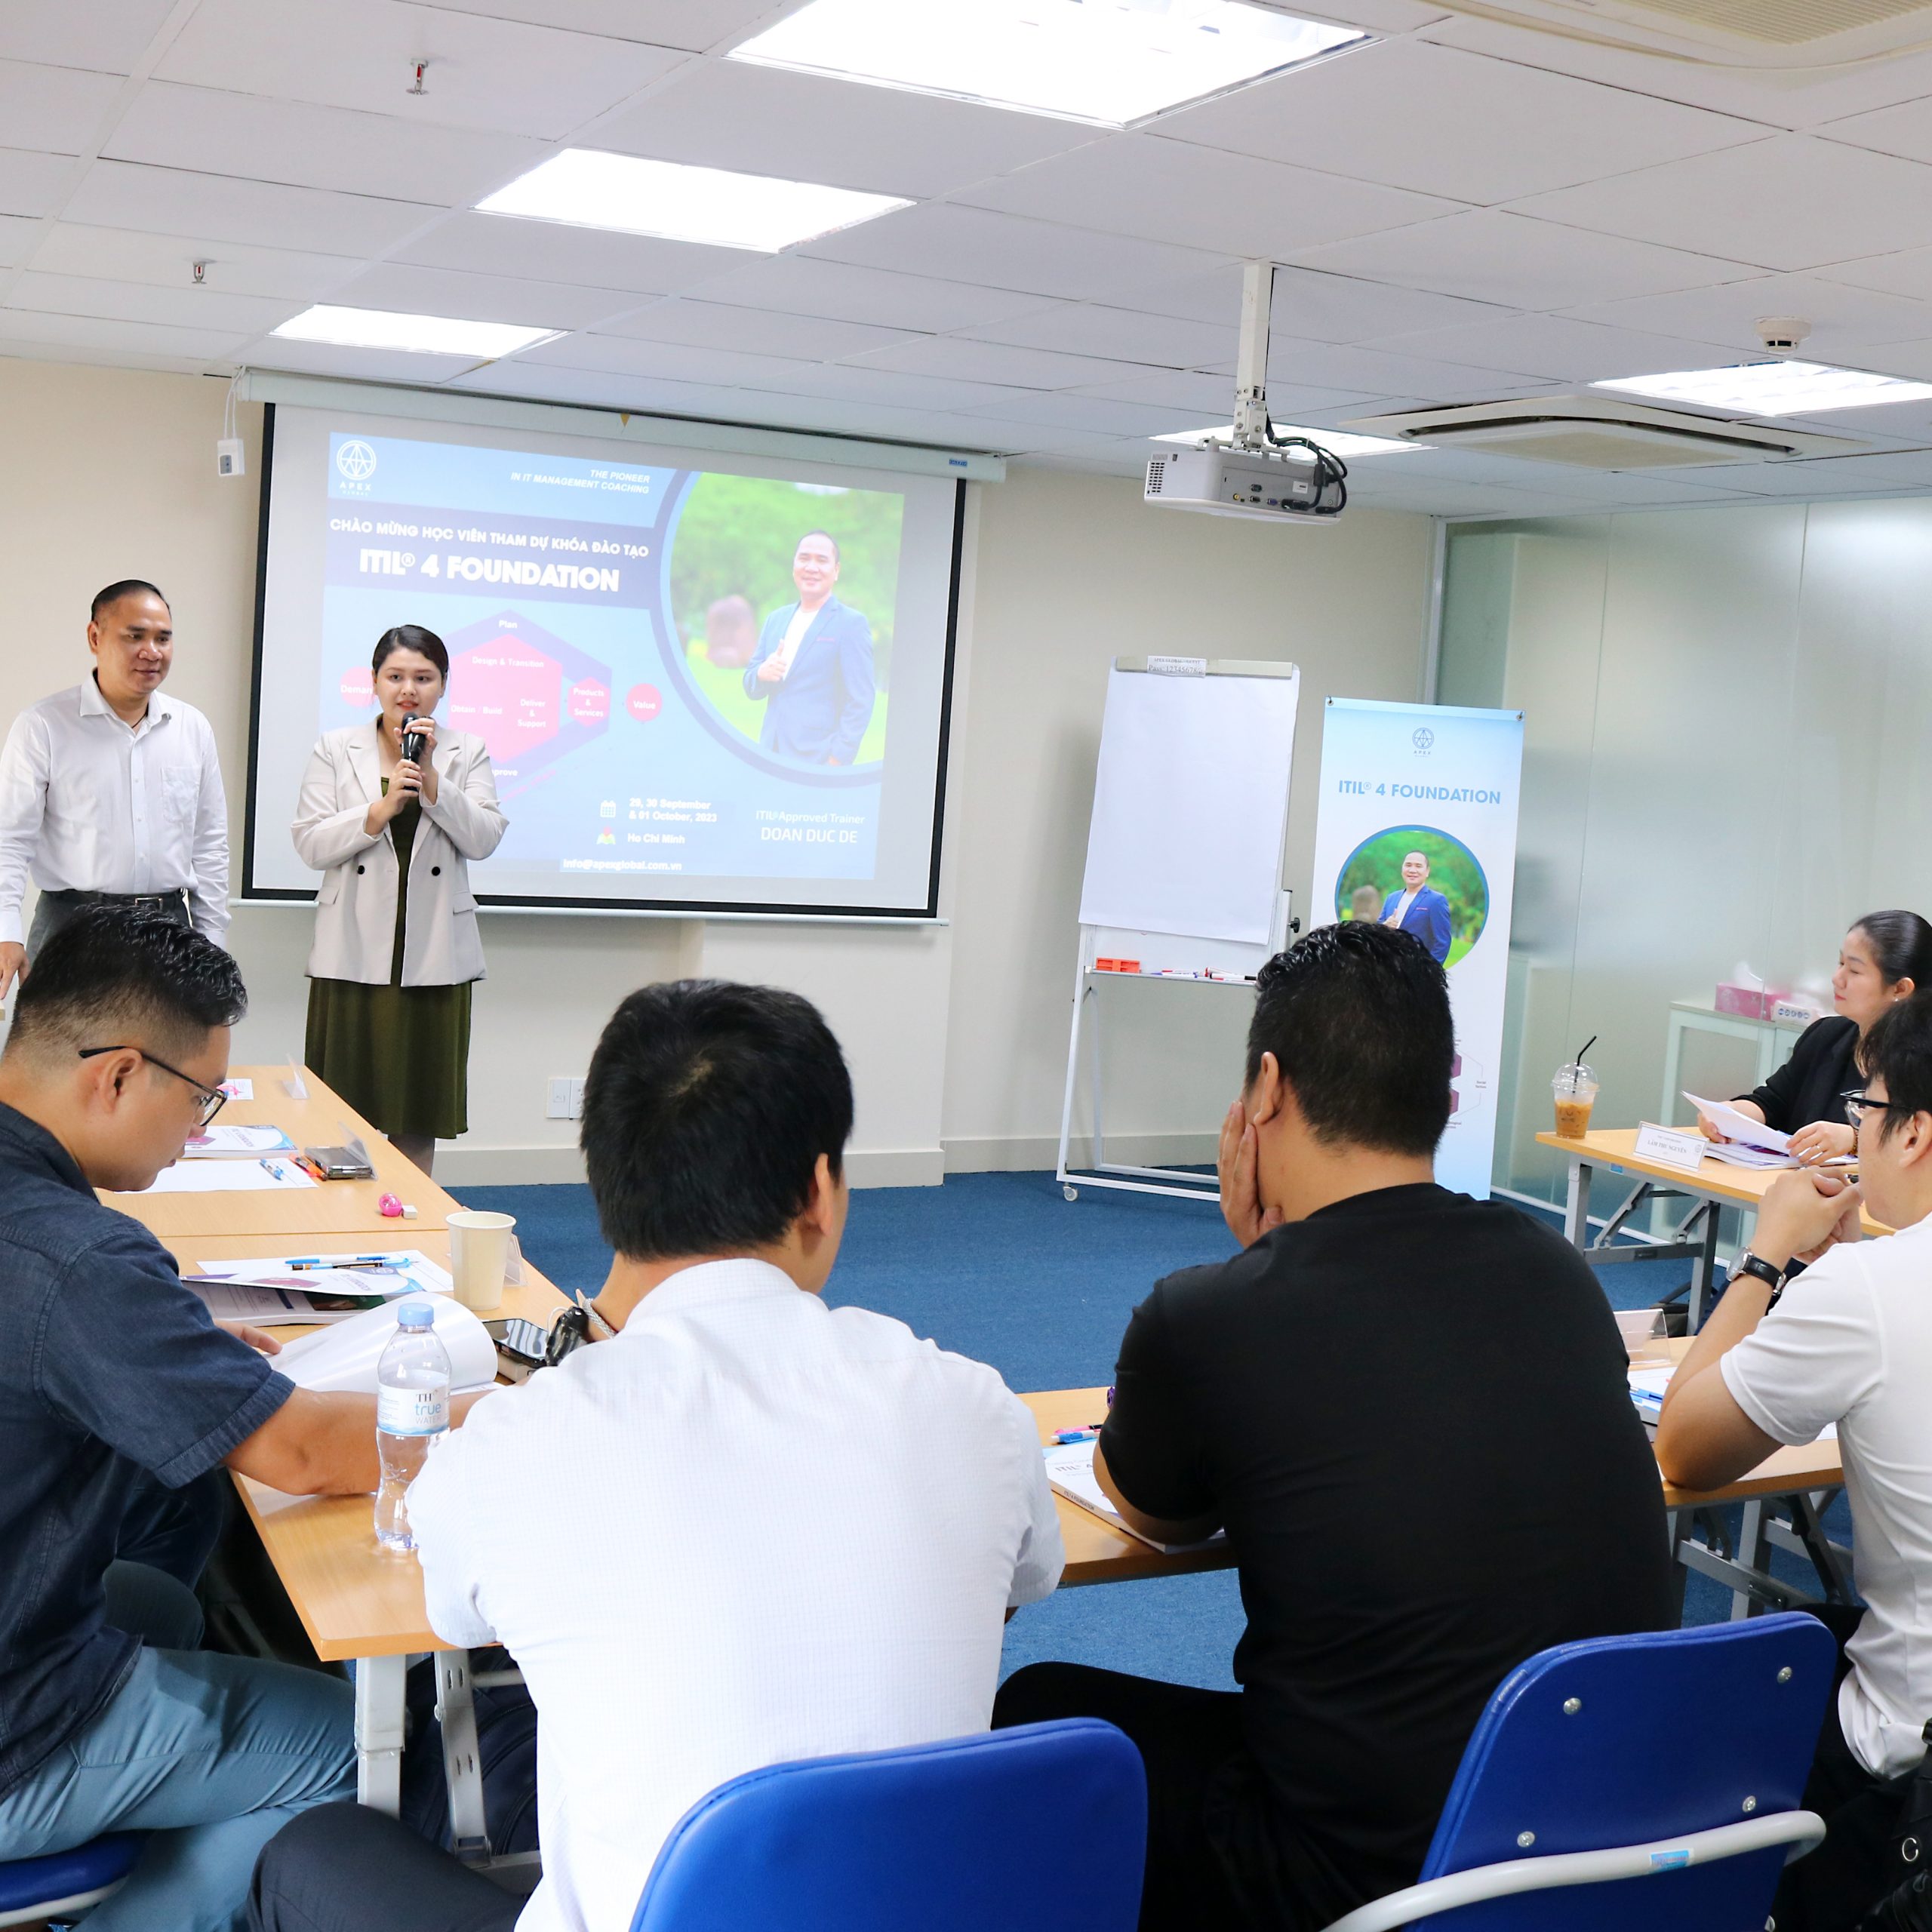 Khai giảng khoá đào tạo ITIL® 4 Foundation tháng 09 tại Hồ Chí Minh